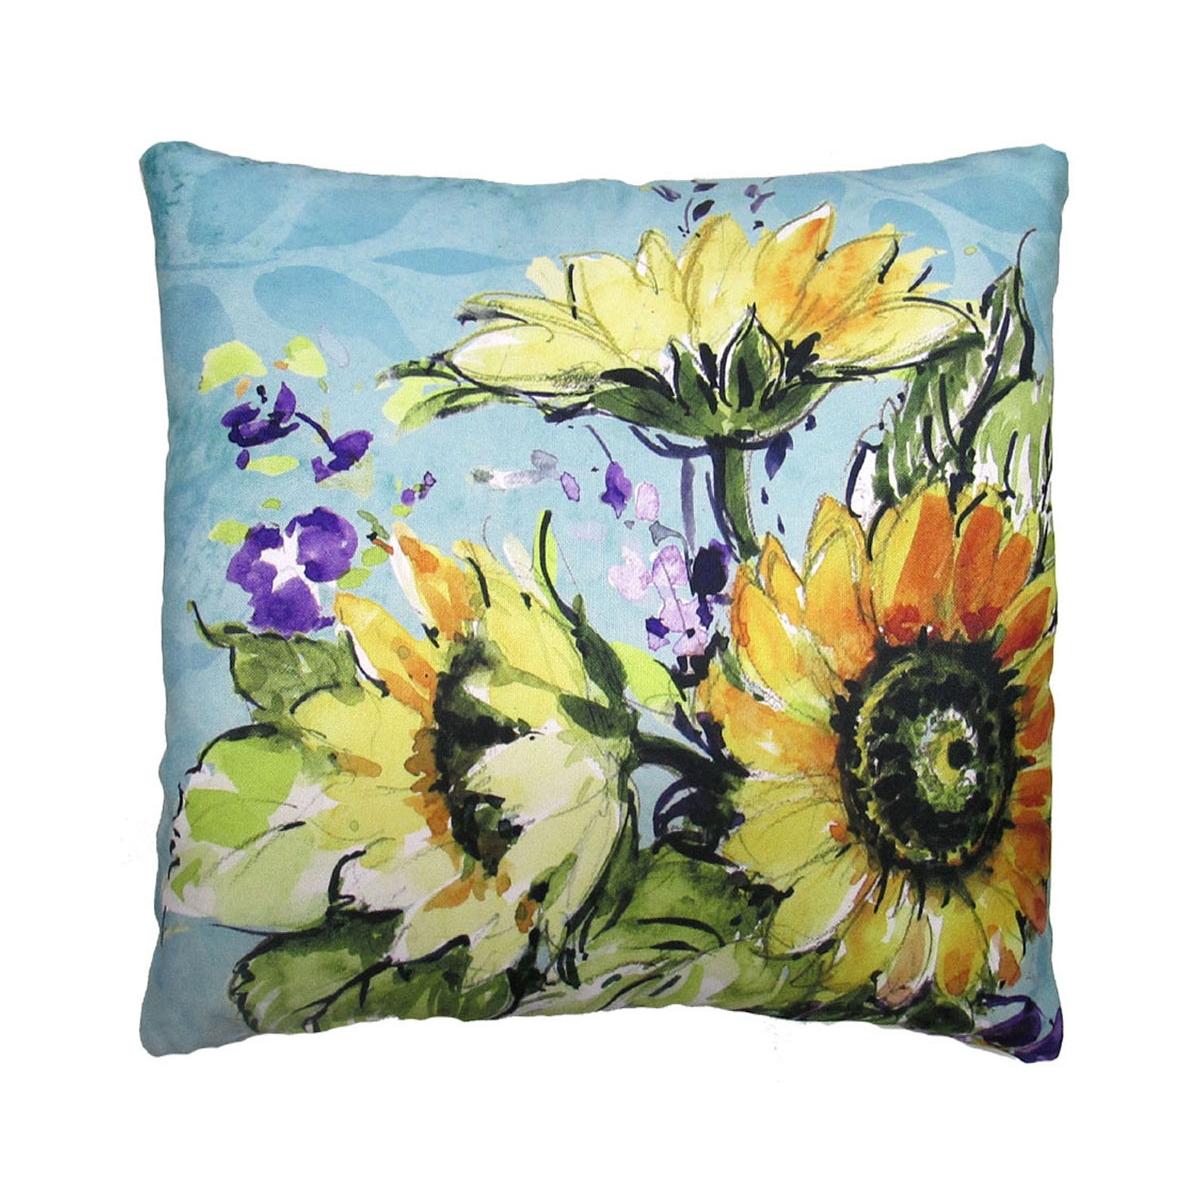 Summer Sunflowers Pillow